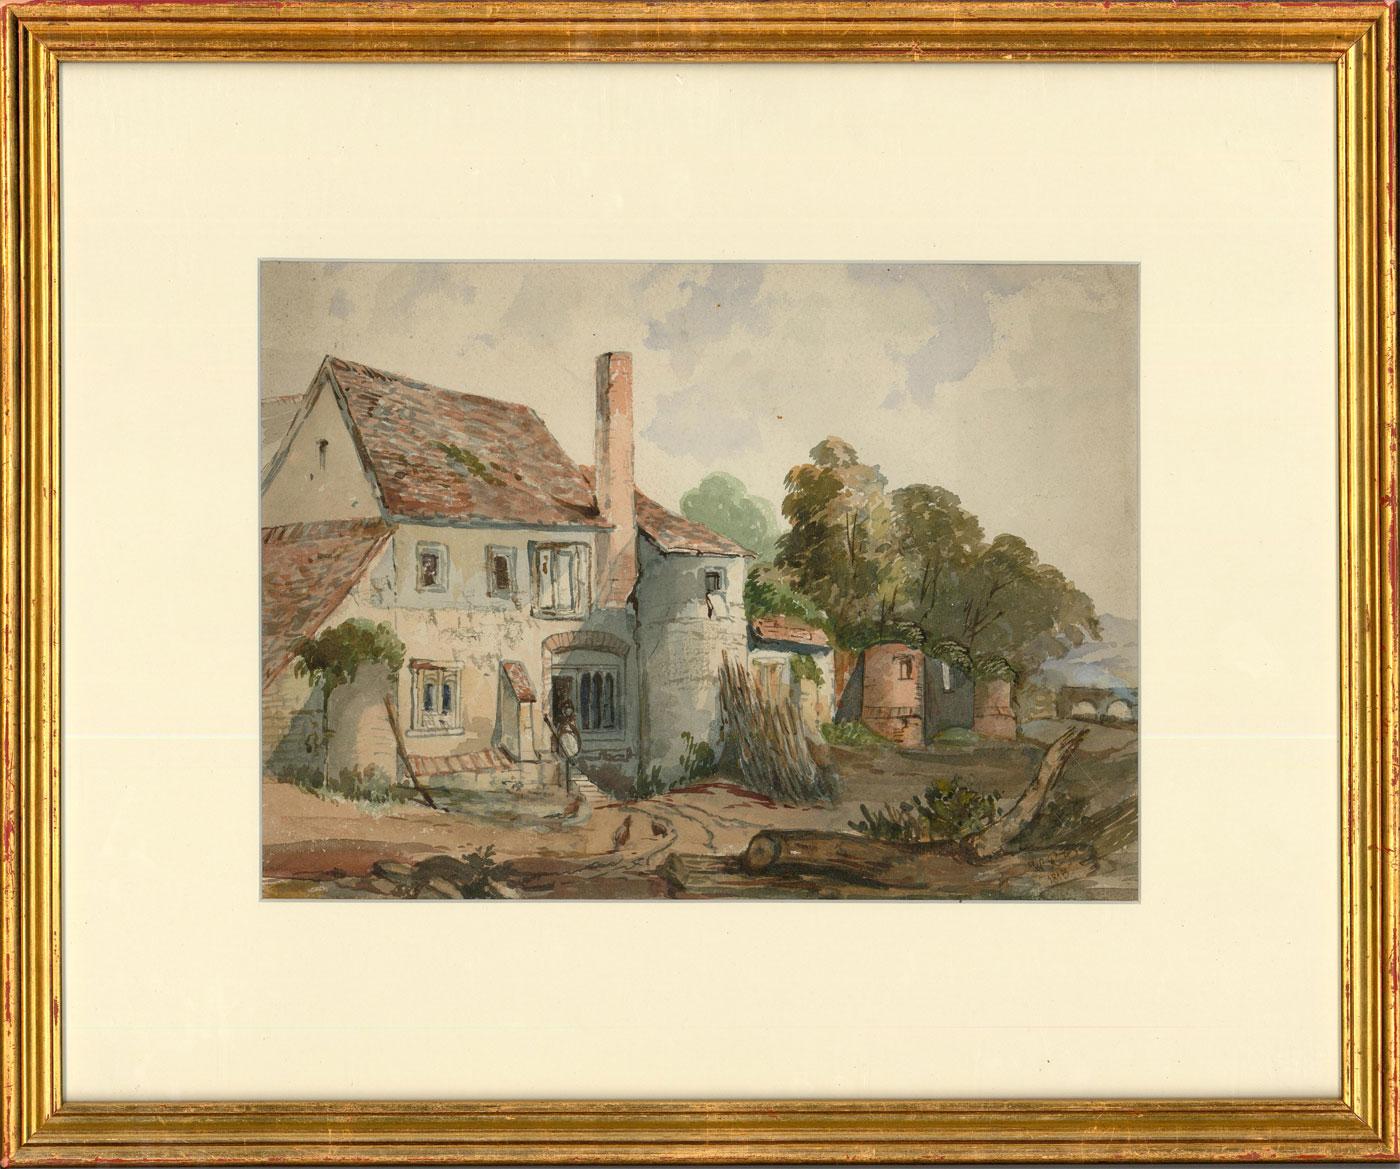 Unknown Landscape Art – Gerahmtes Aquarell von W.R.P. aus dem Jahr 1815, The Castle Inn